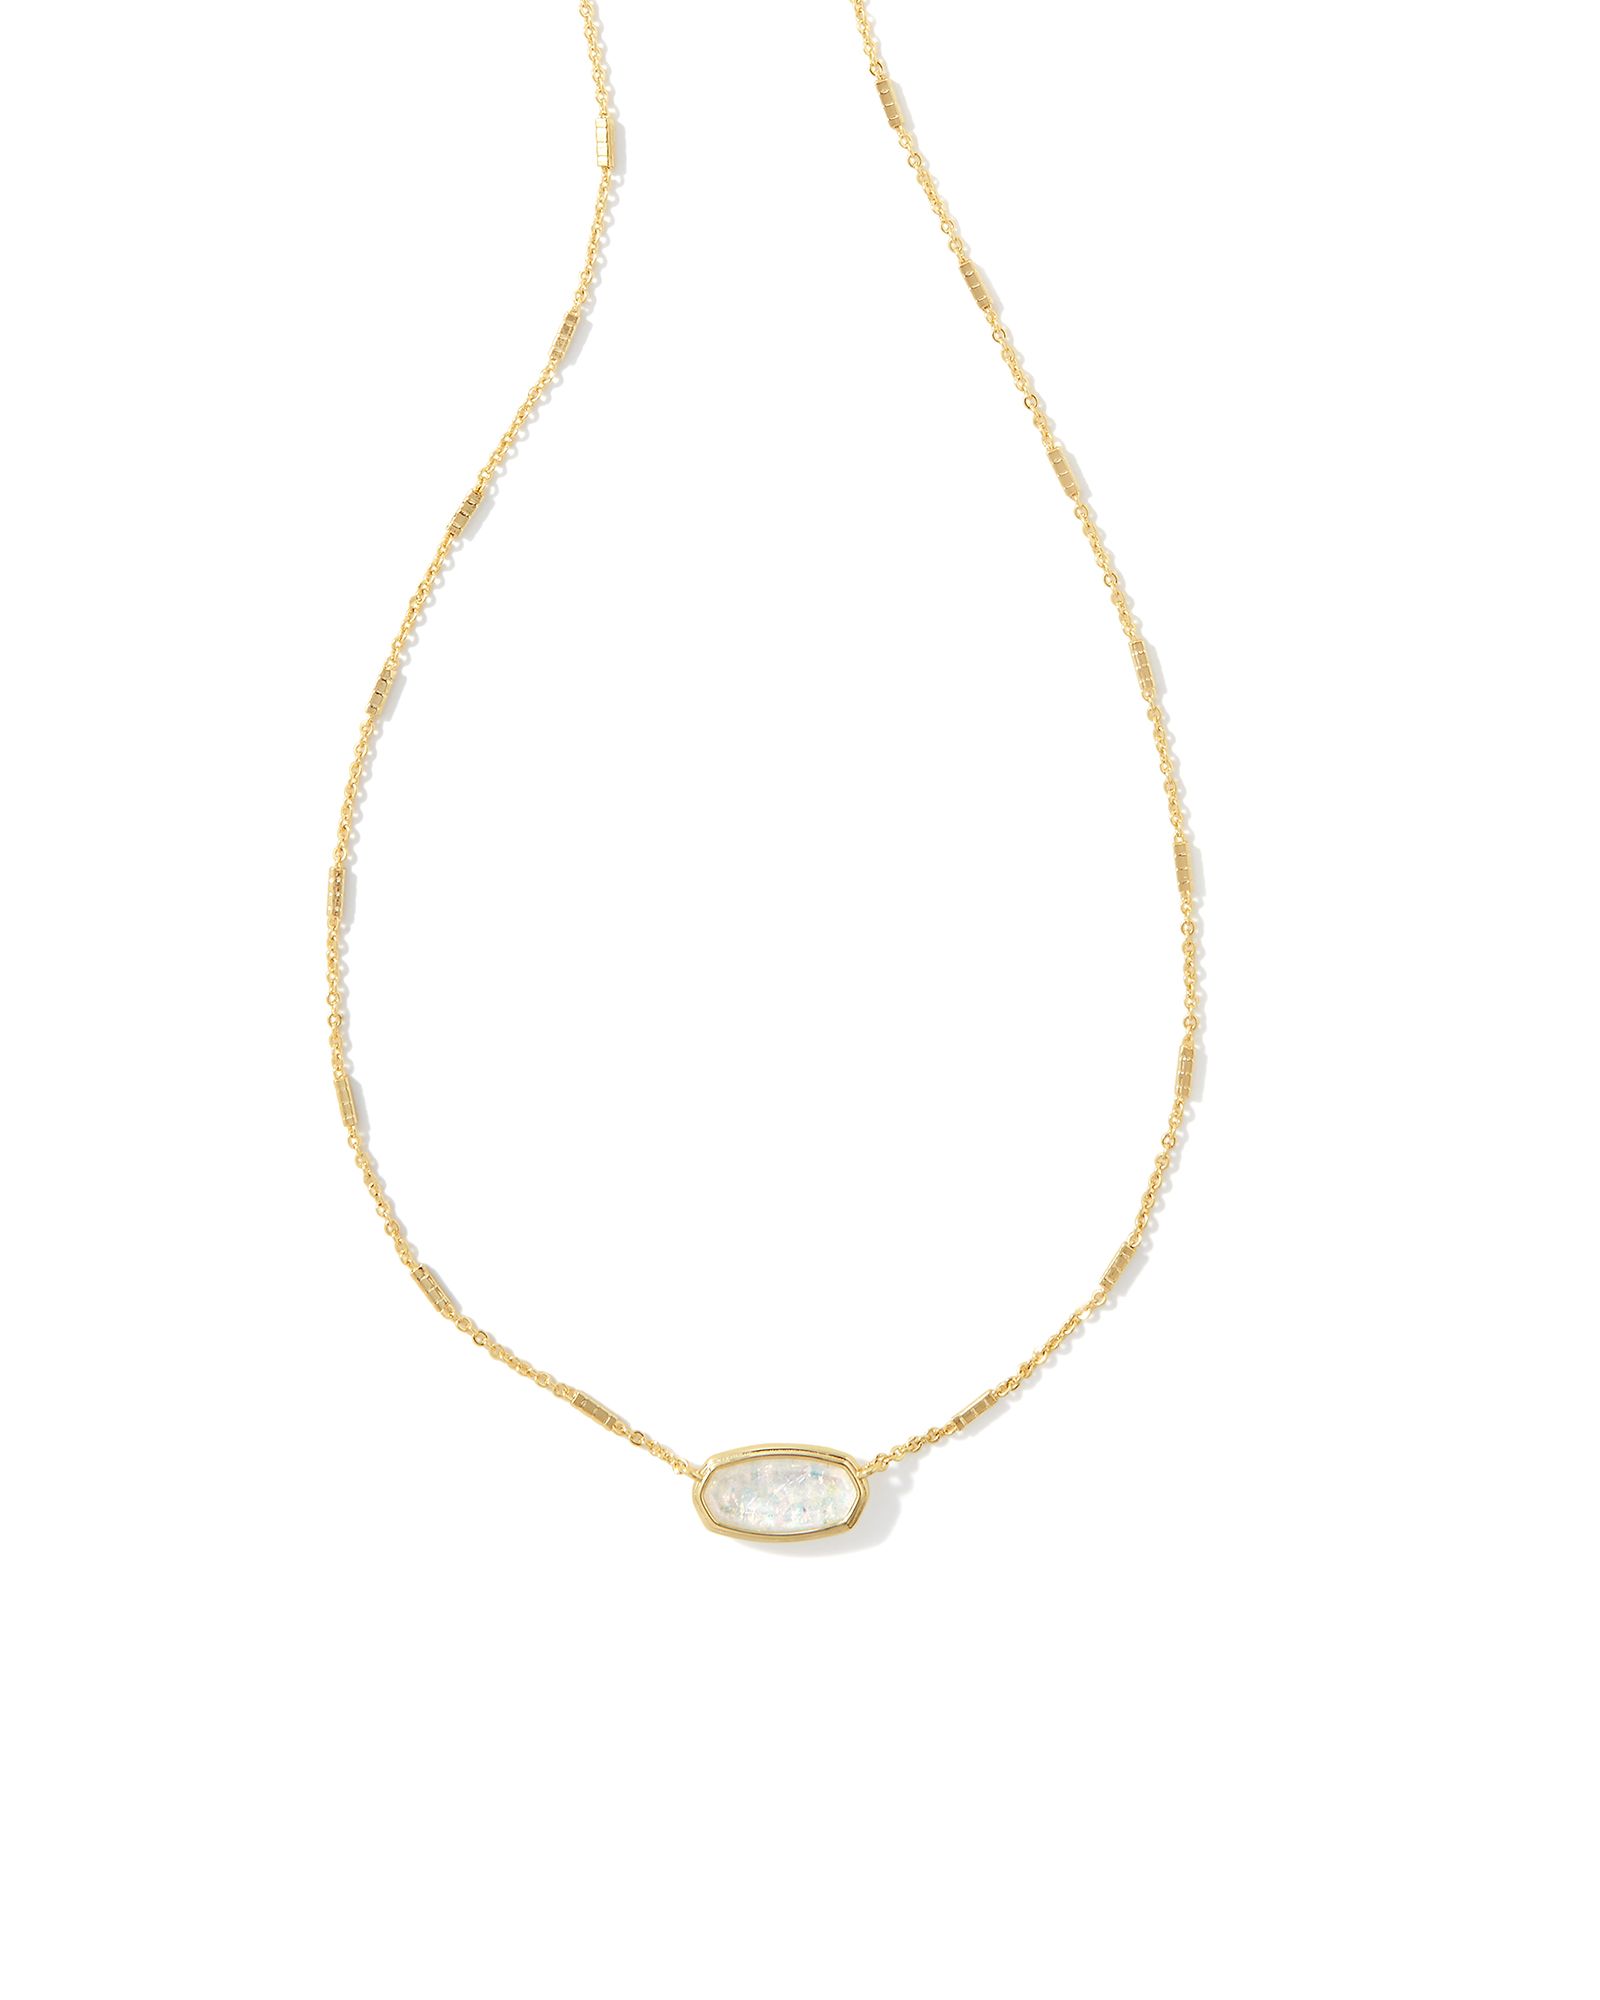 Framed Gold Elisa Pendant Necklace in White Iridescent Glitter Glass | Kendra Scott | Kendra Scott